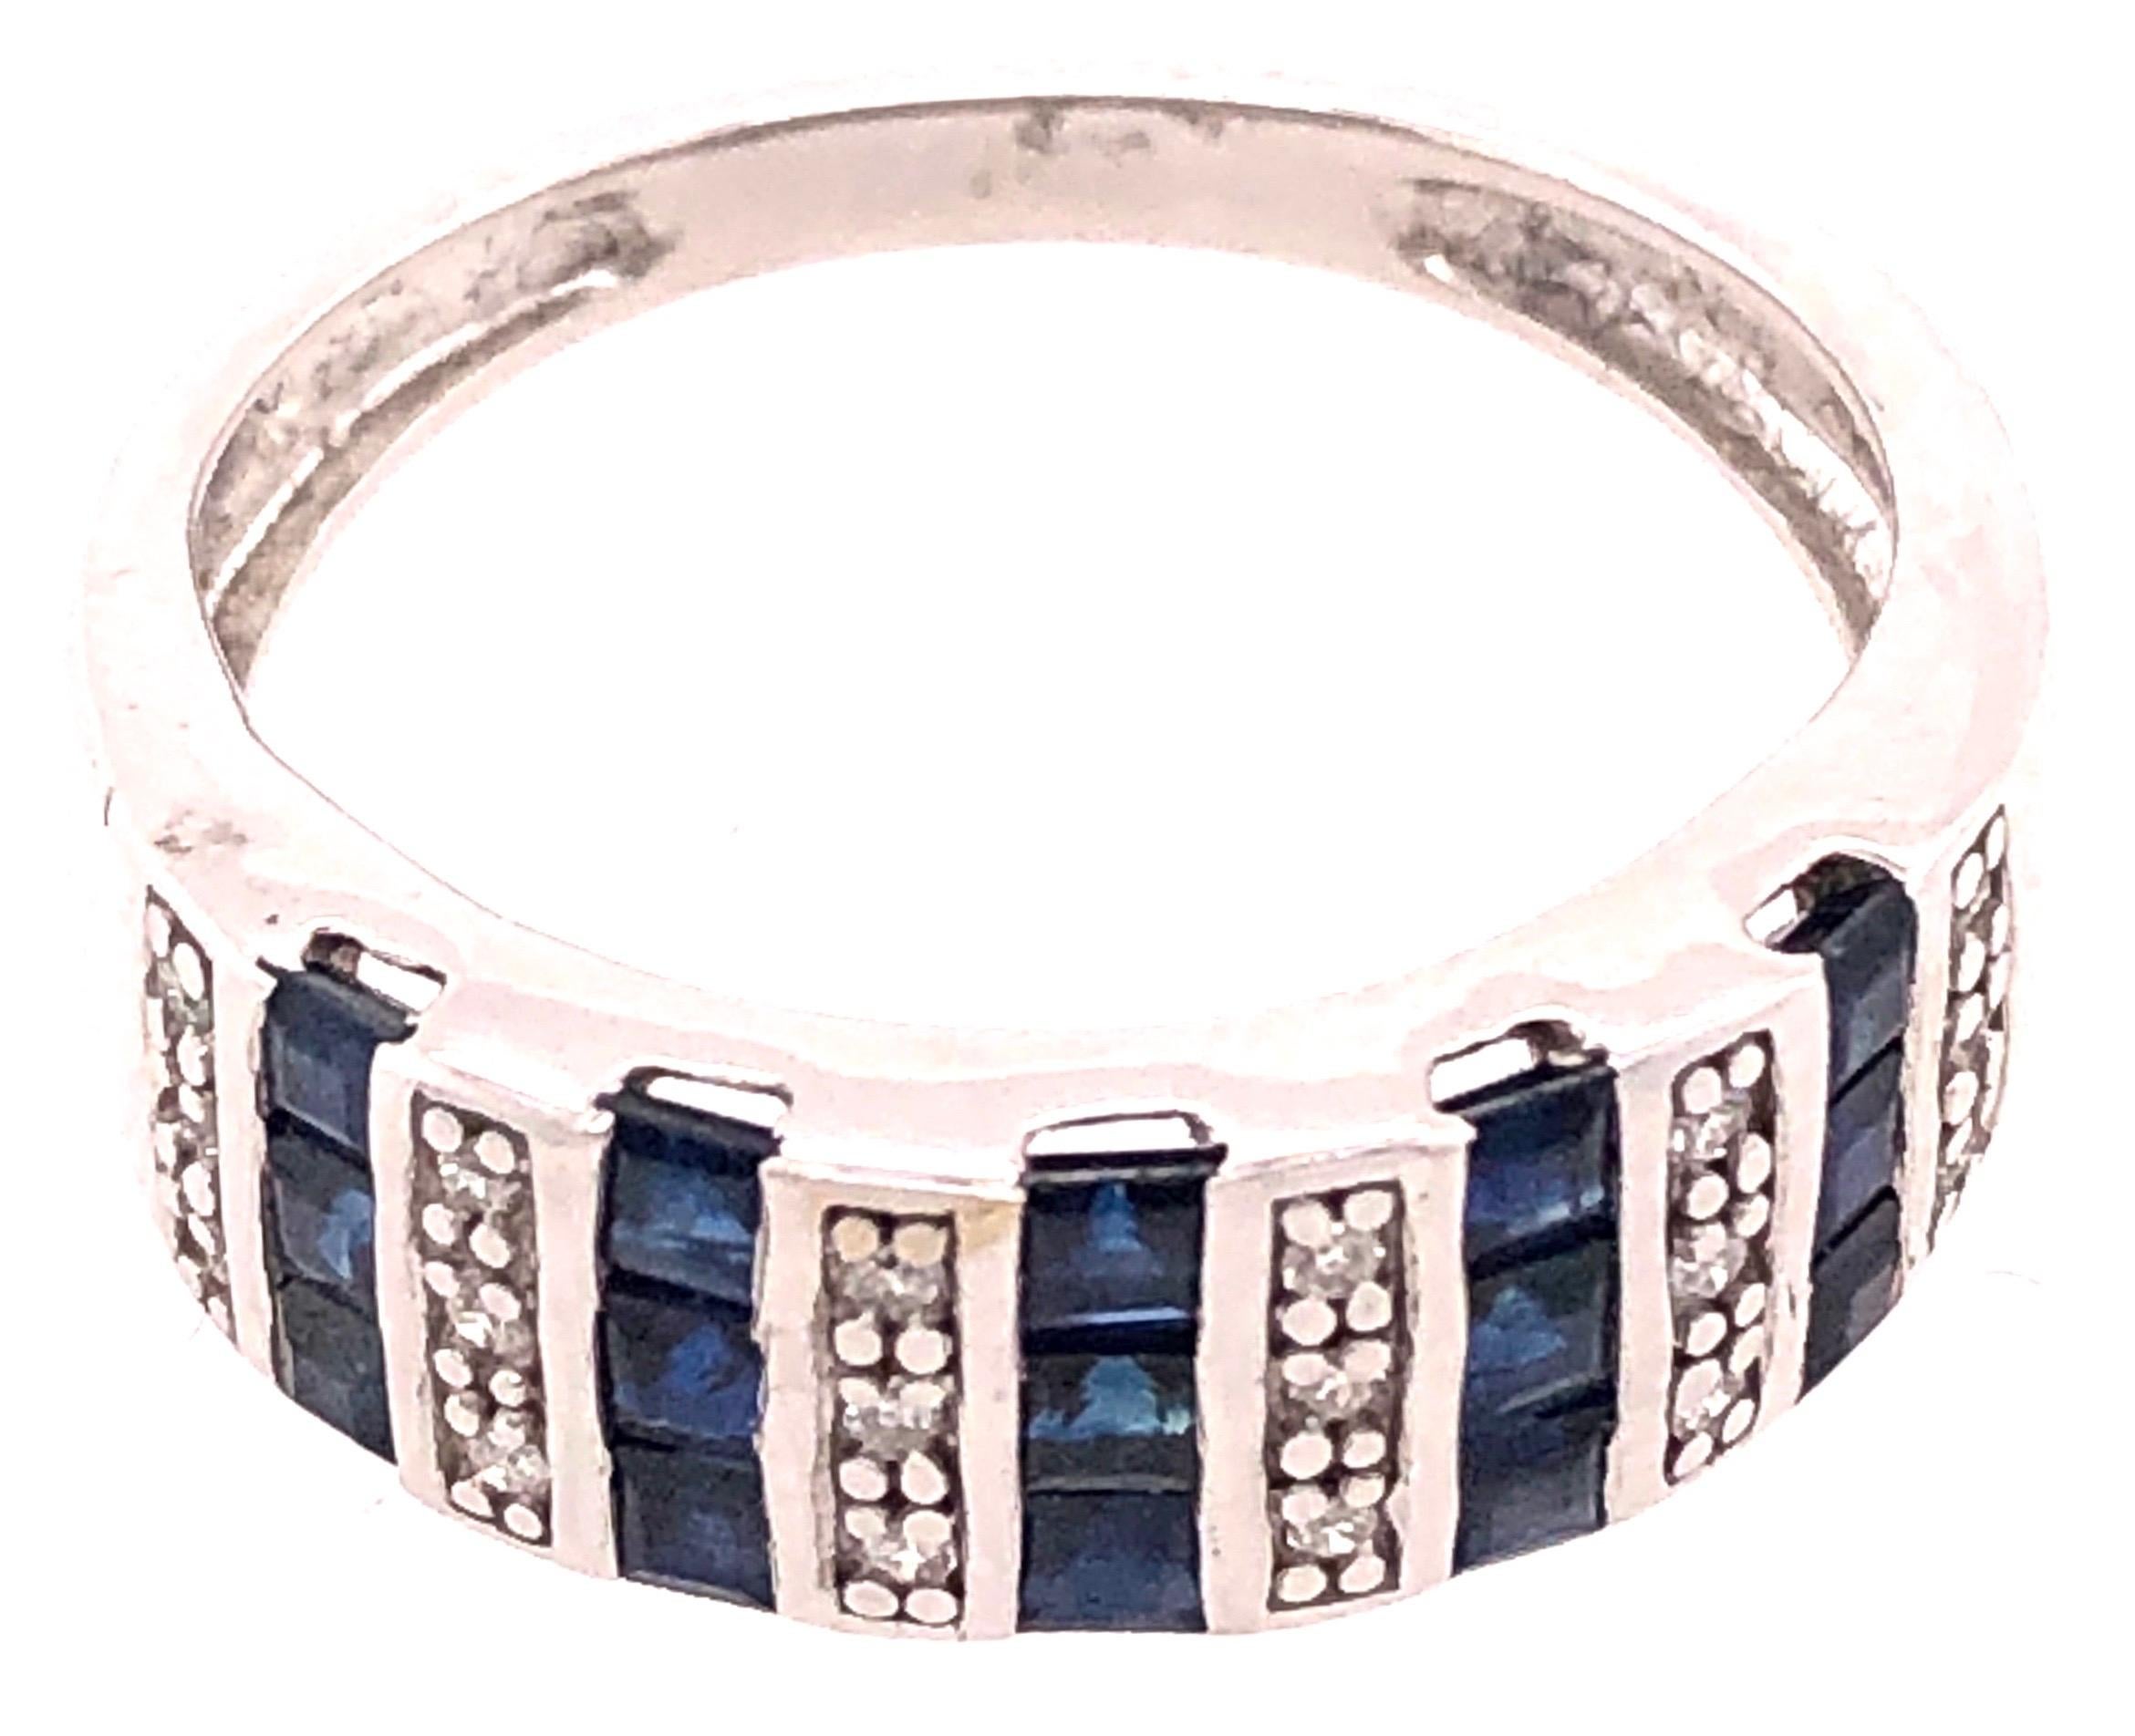 bague à anneau en or blanc 14 carats, saphir bleu et diamant
0.18 TDW.
Taille 7.25
poids total de 4 grammes.